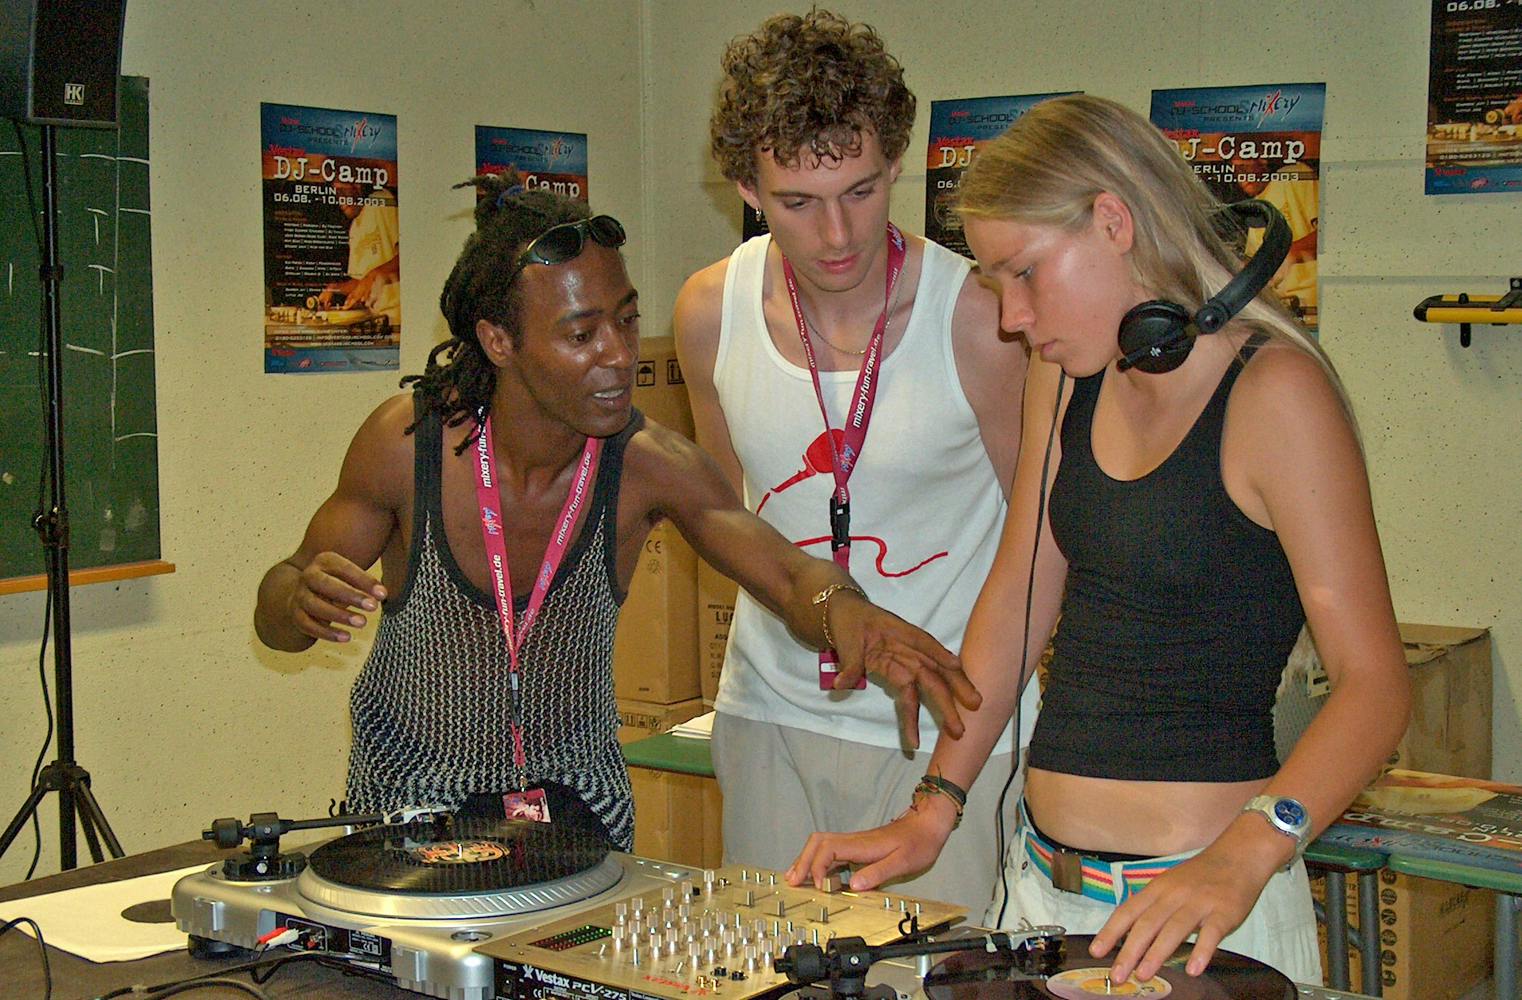 Discjockey-Workshop | in 4 Phasen à 30 Minuten zum DJ